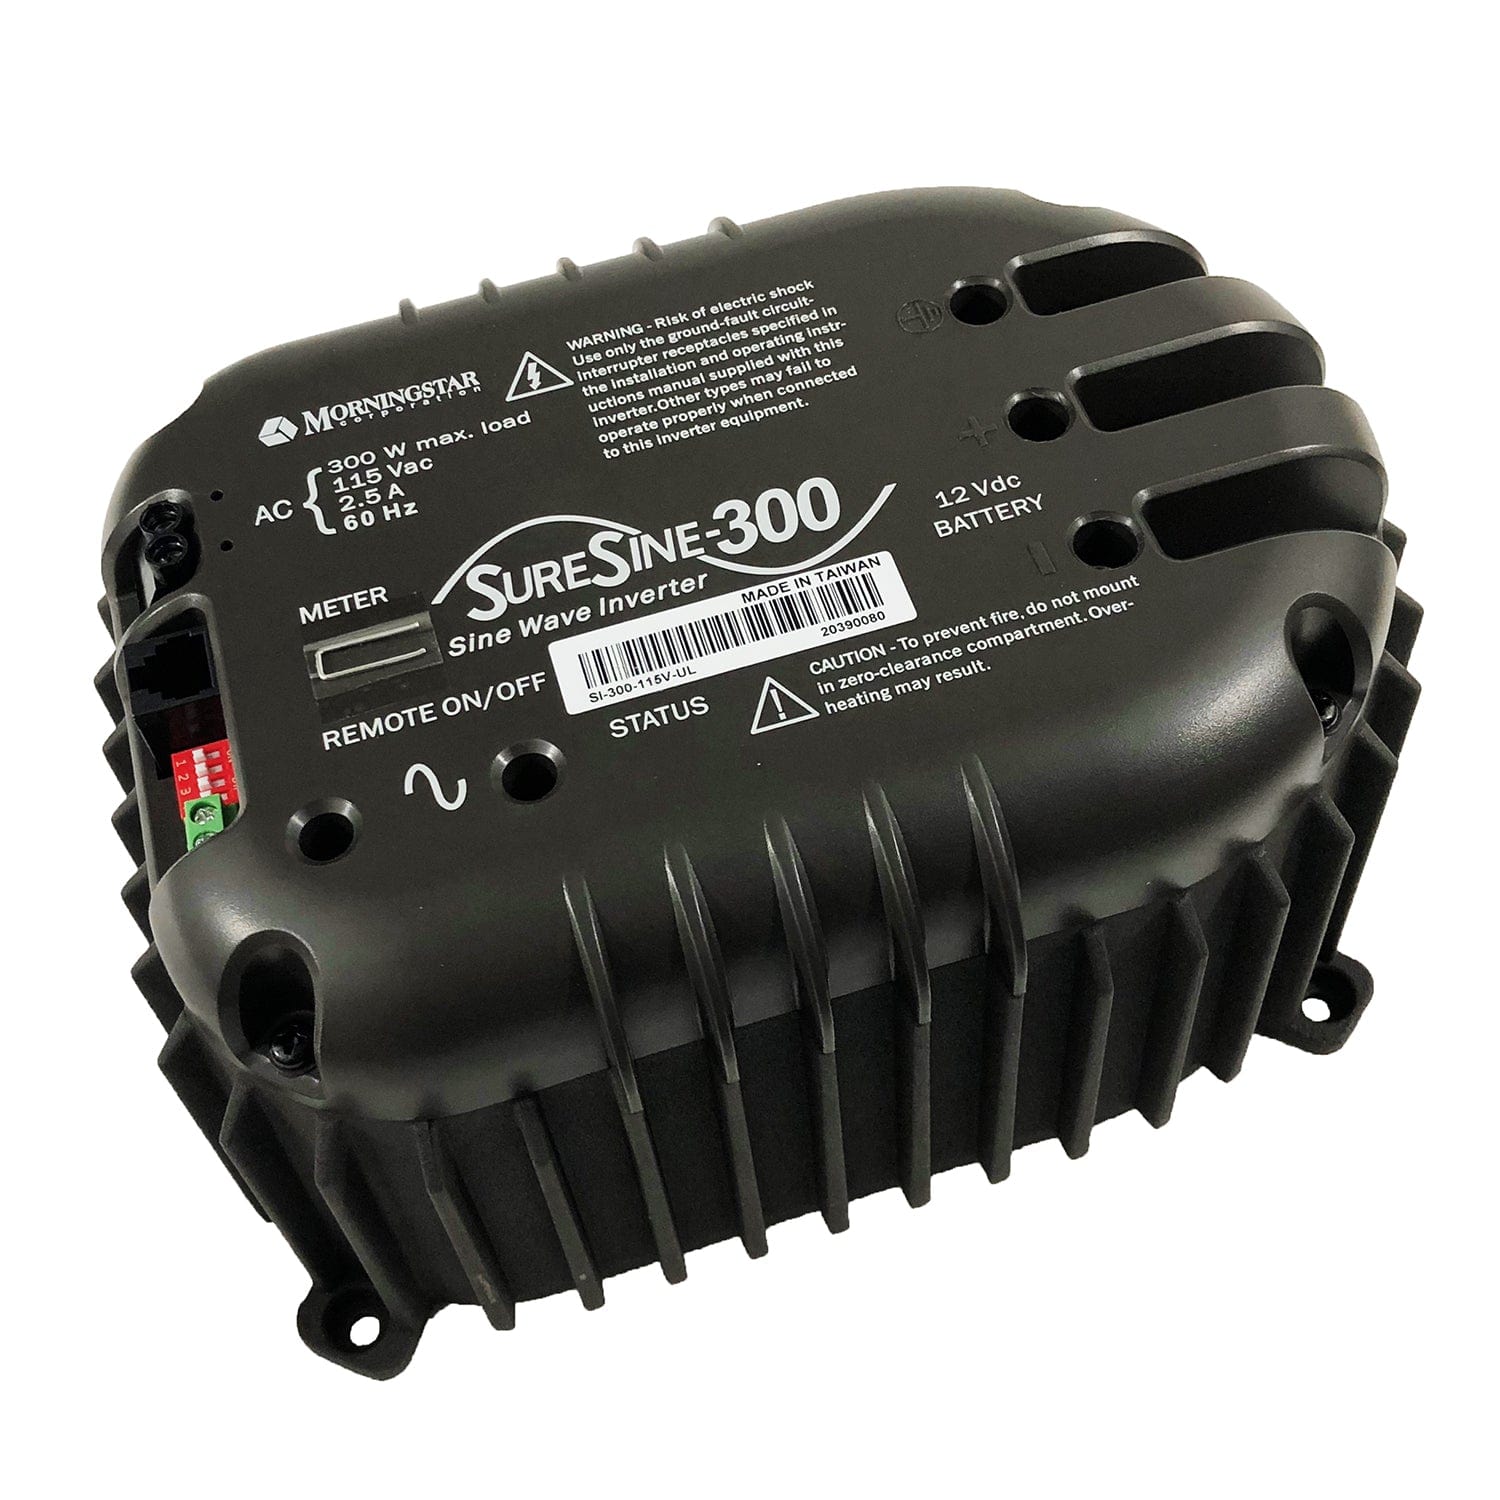 MorningStar SI-300-115V-UL Suresine Inverter 300 Watt, 115 Volt, 60hz Ac